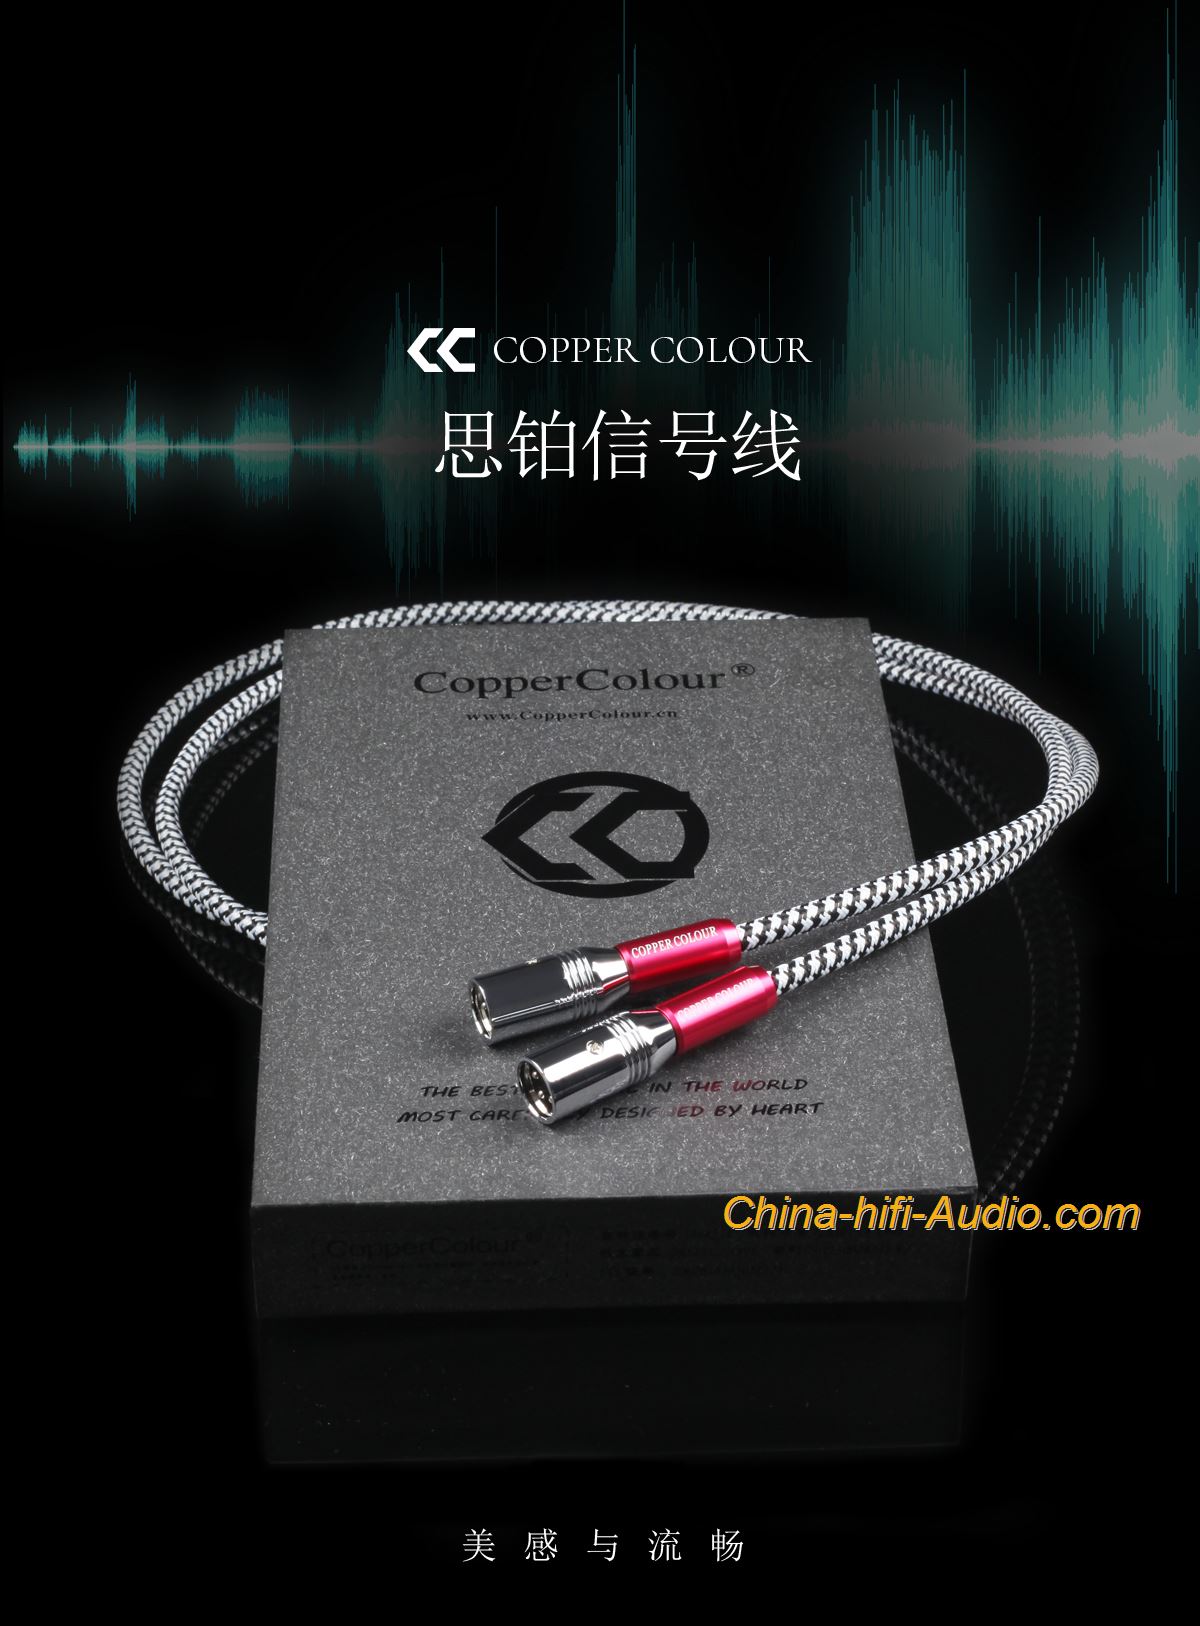 CopperColour CC WHISPER OCC XLR audiophile Audio cable interconect Balance cord